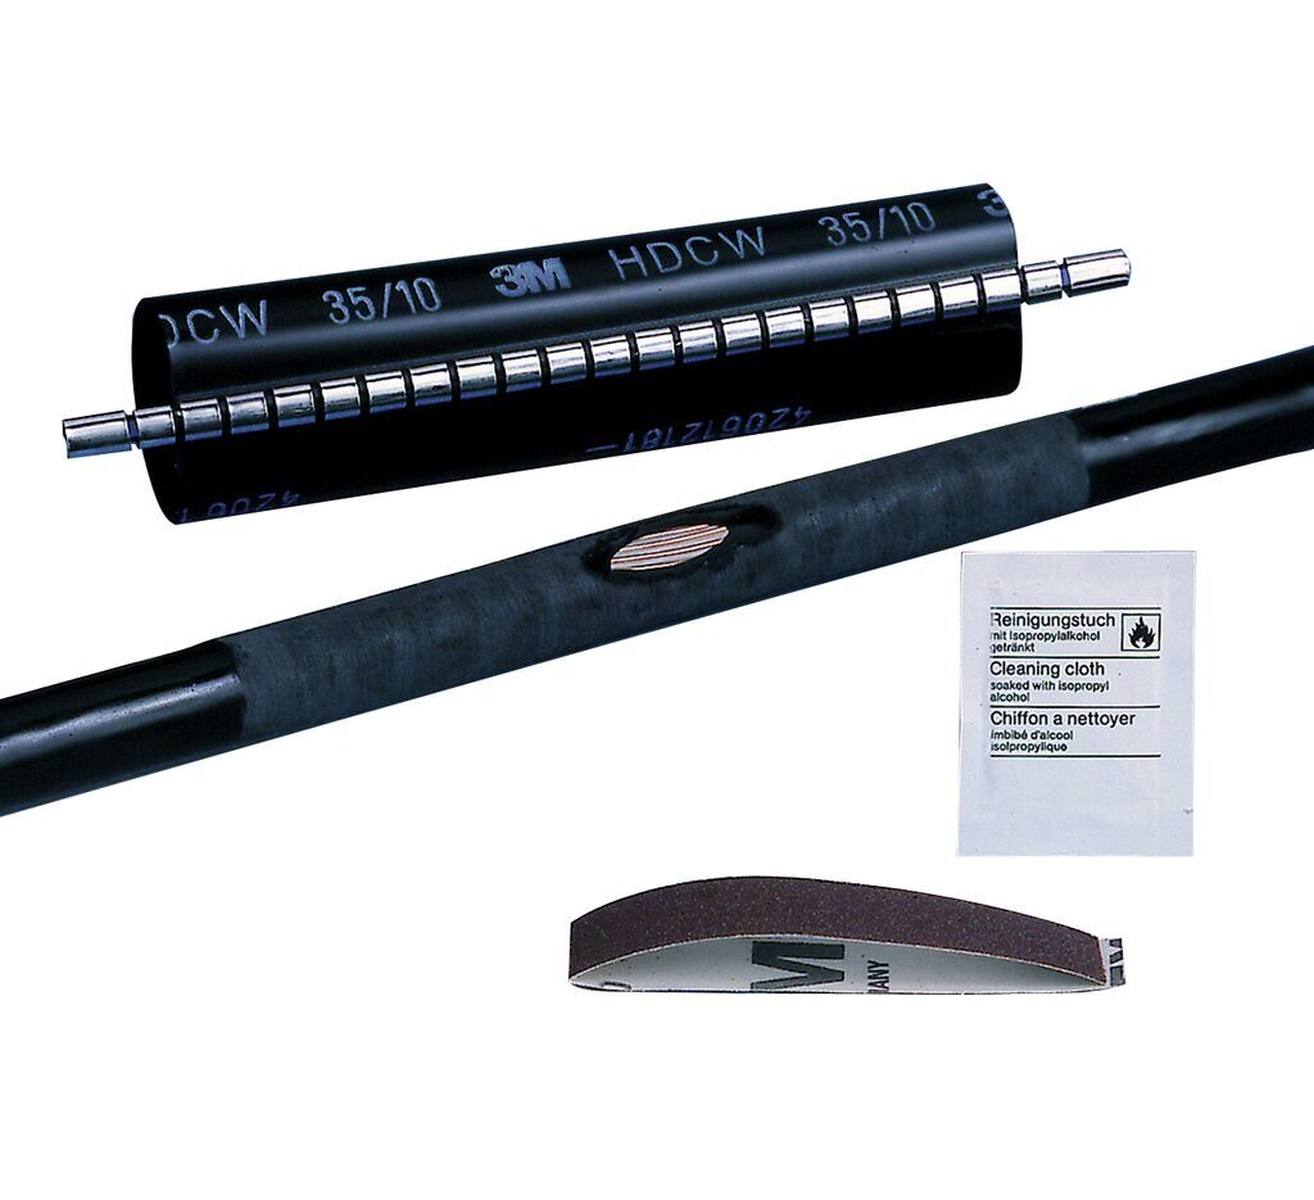  3M HDCW lämpökutistuva korjausholkki, musta, 35/10 mm, 250 mm